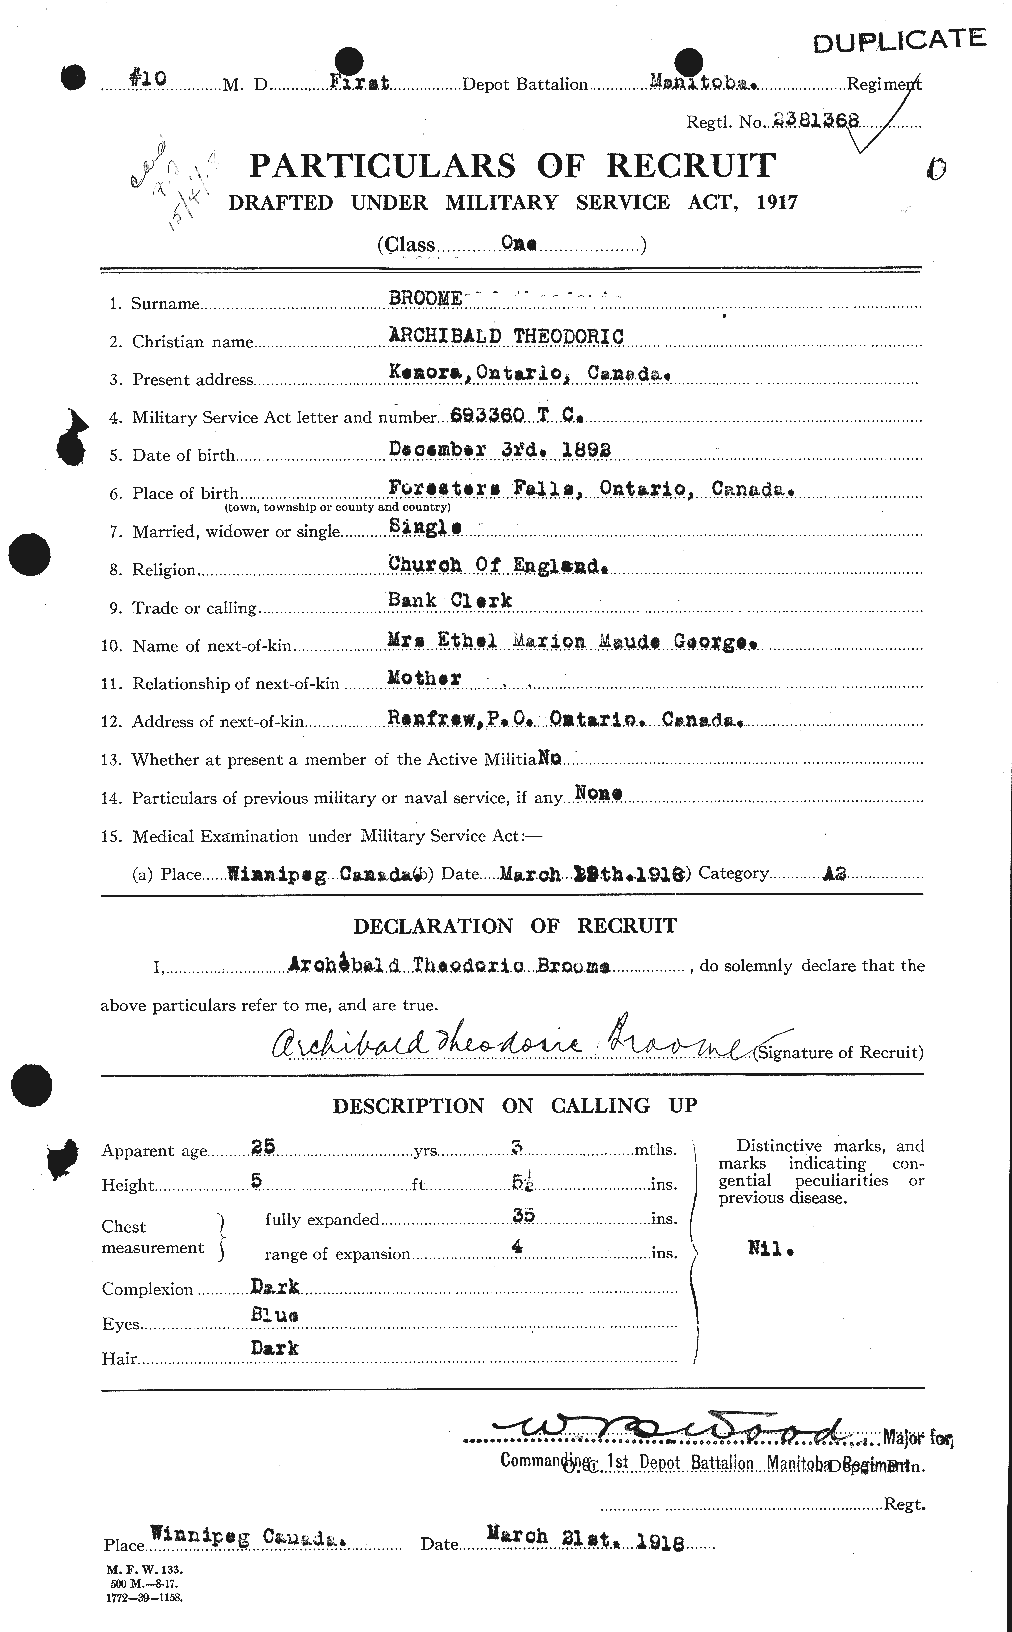 Dossiers du Personnel de la Première Guerre mondiale - CEC 264800a